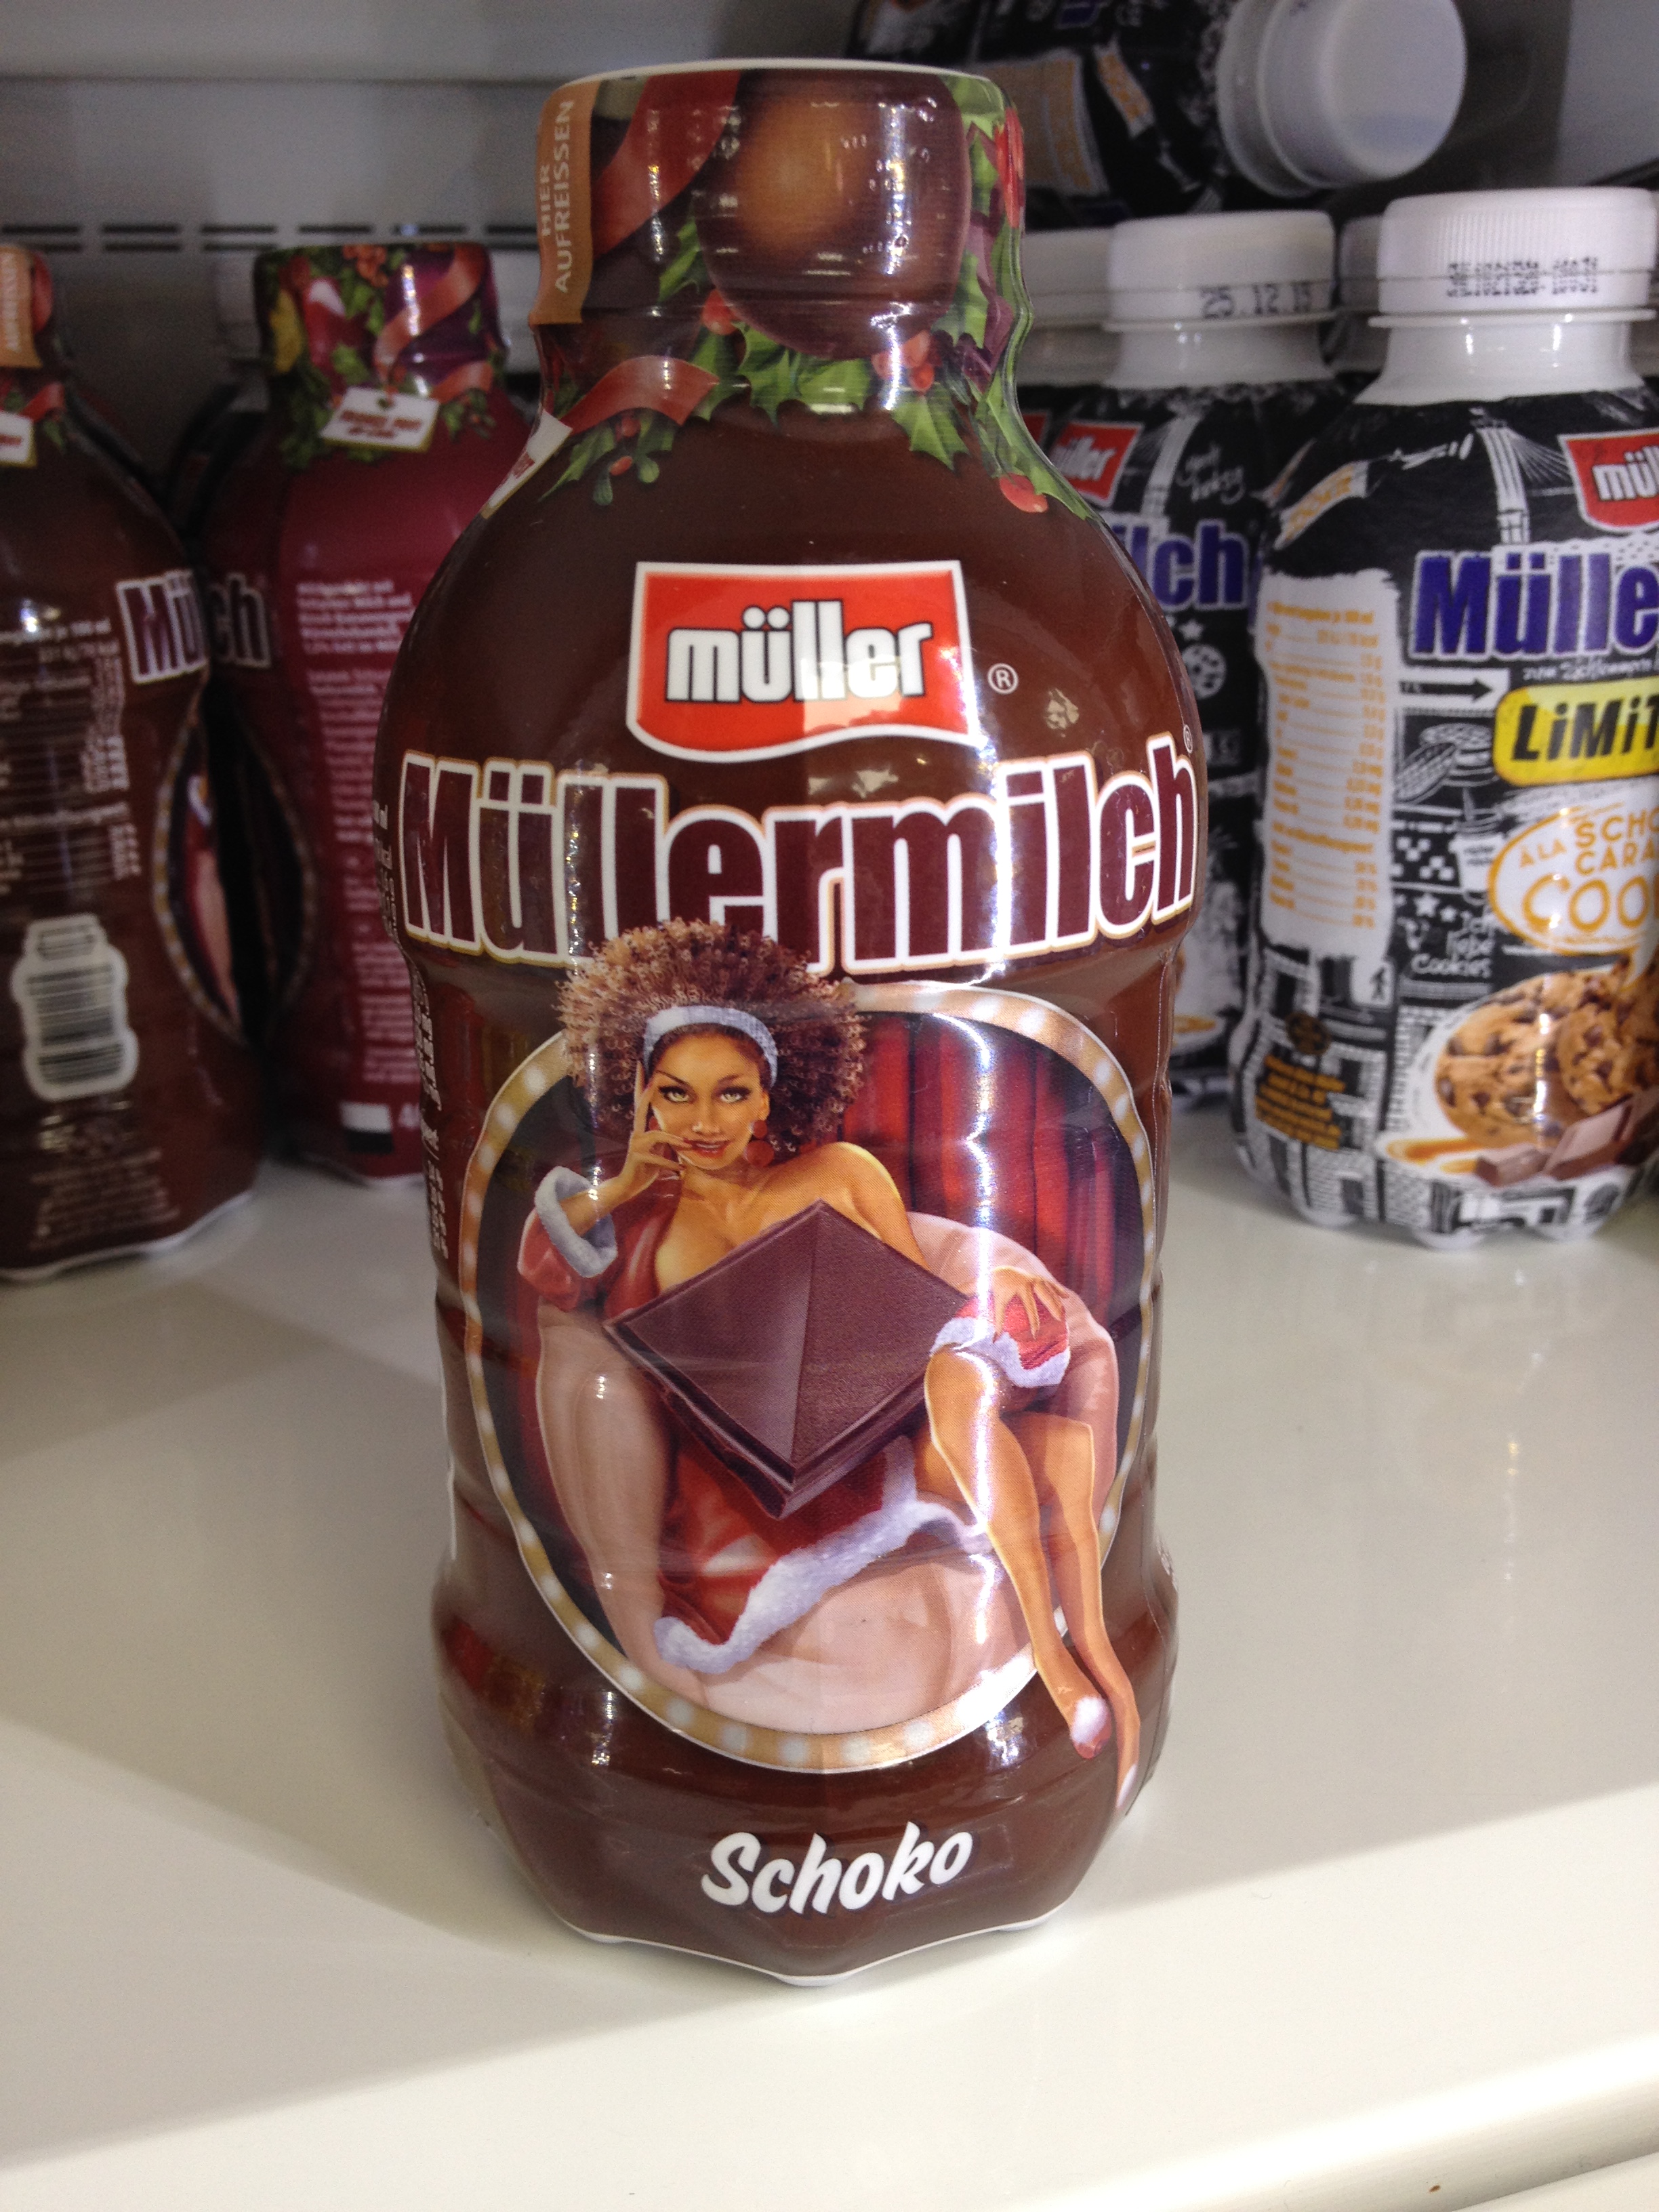 Müller-Milch steht für sexistische und Werbung in rassistische der